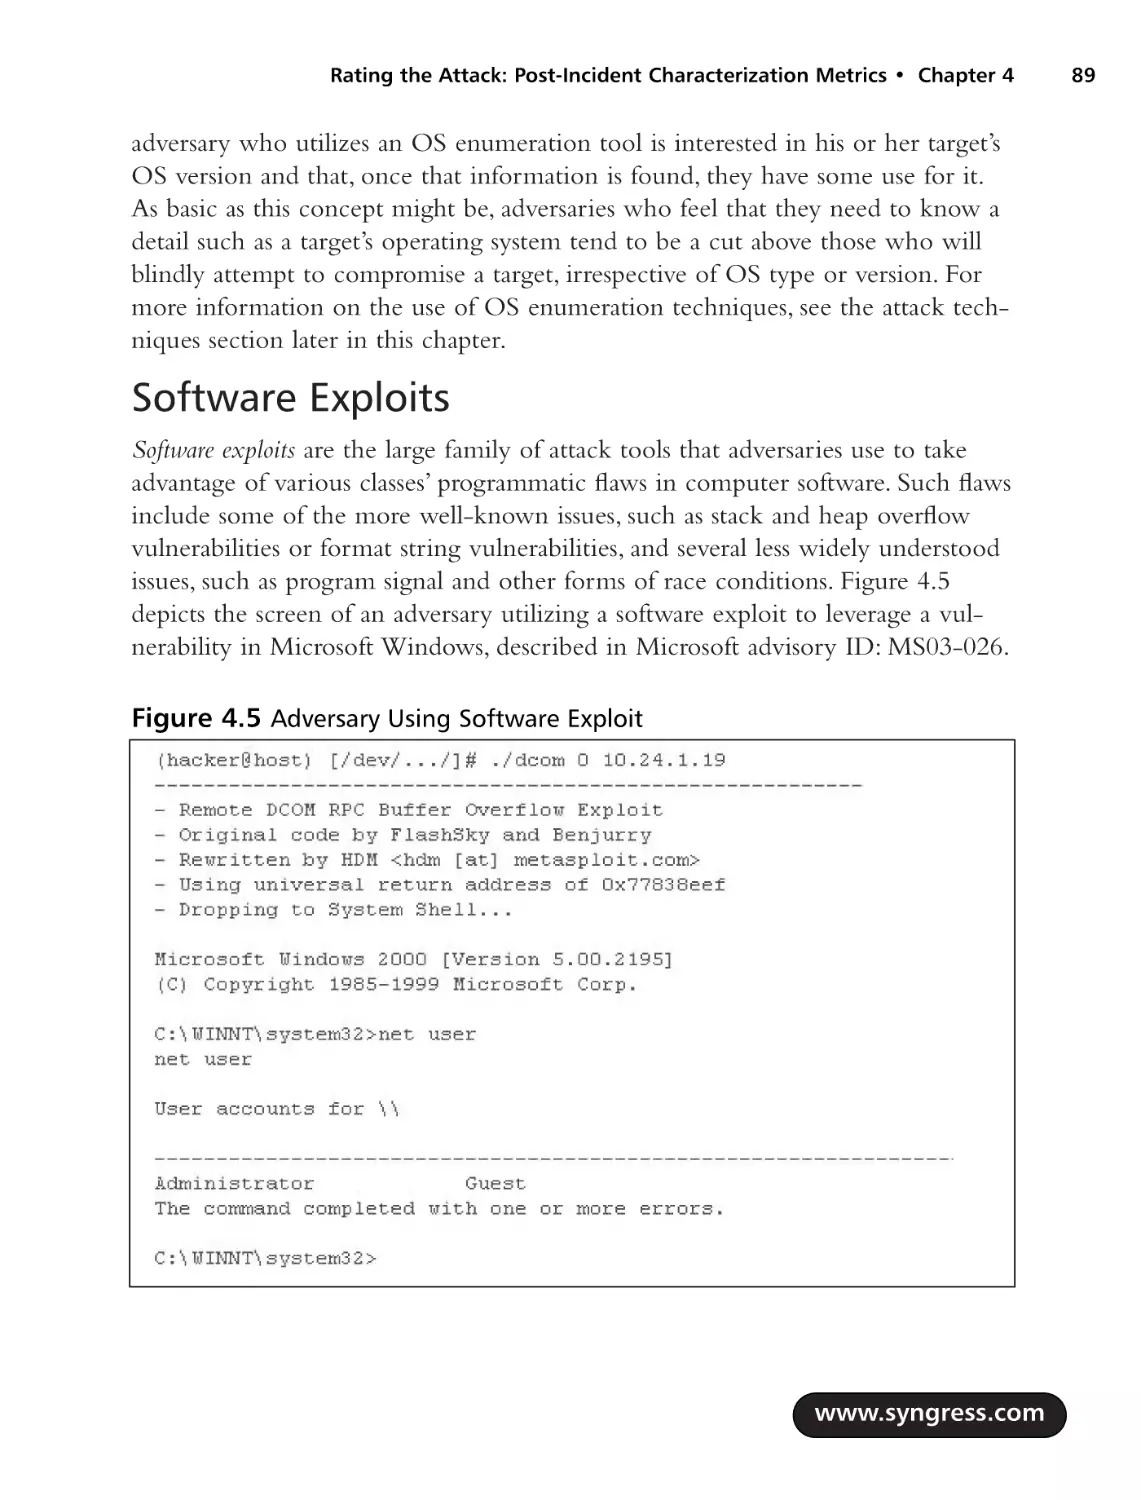 Software Exploits